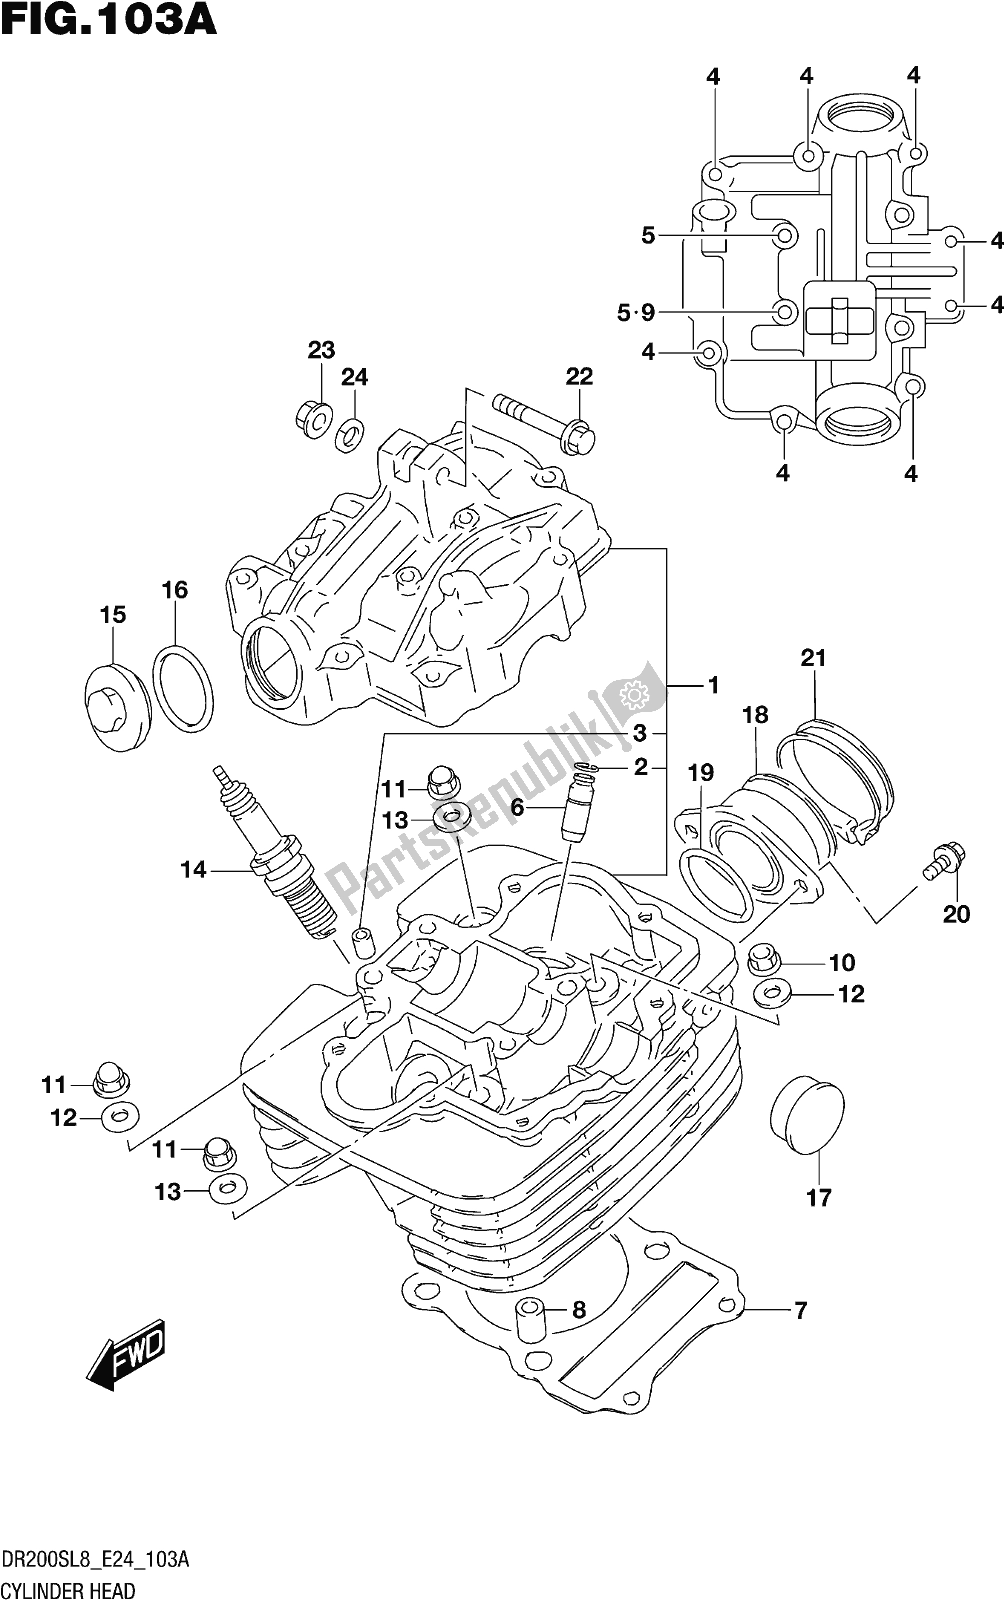 Alle onderdelen voor de Fig. 103a Cylinder Head van de Suzuki DR 200S 2018